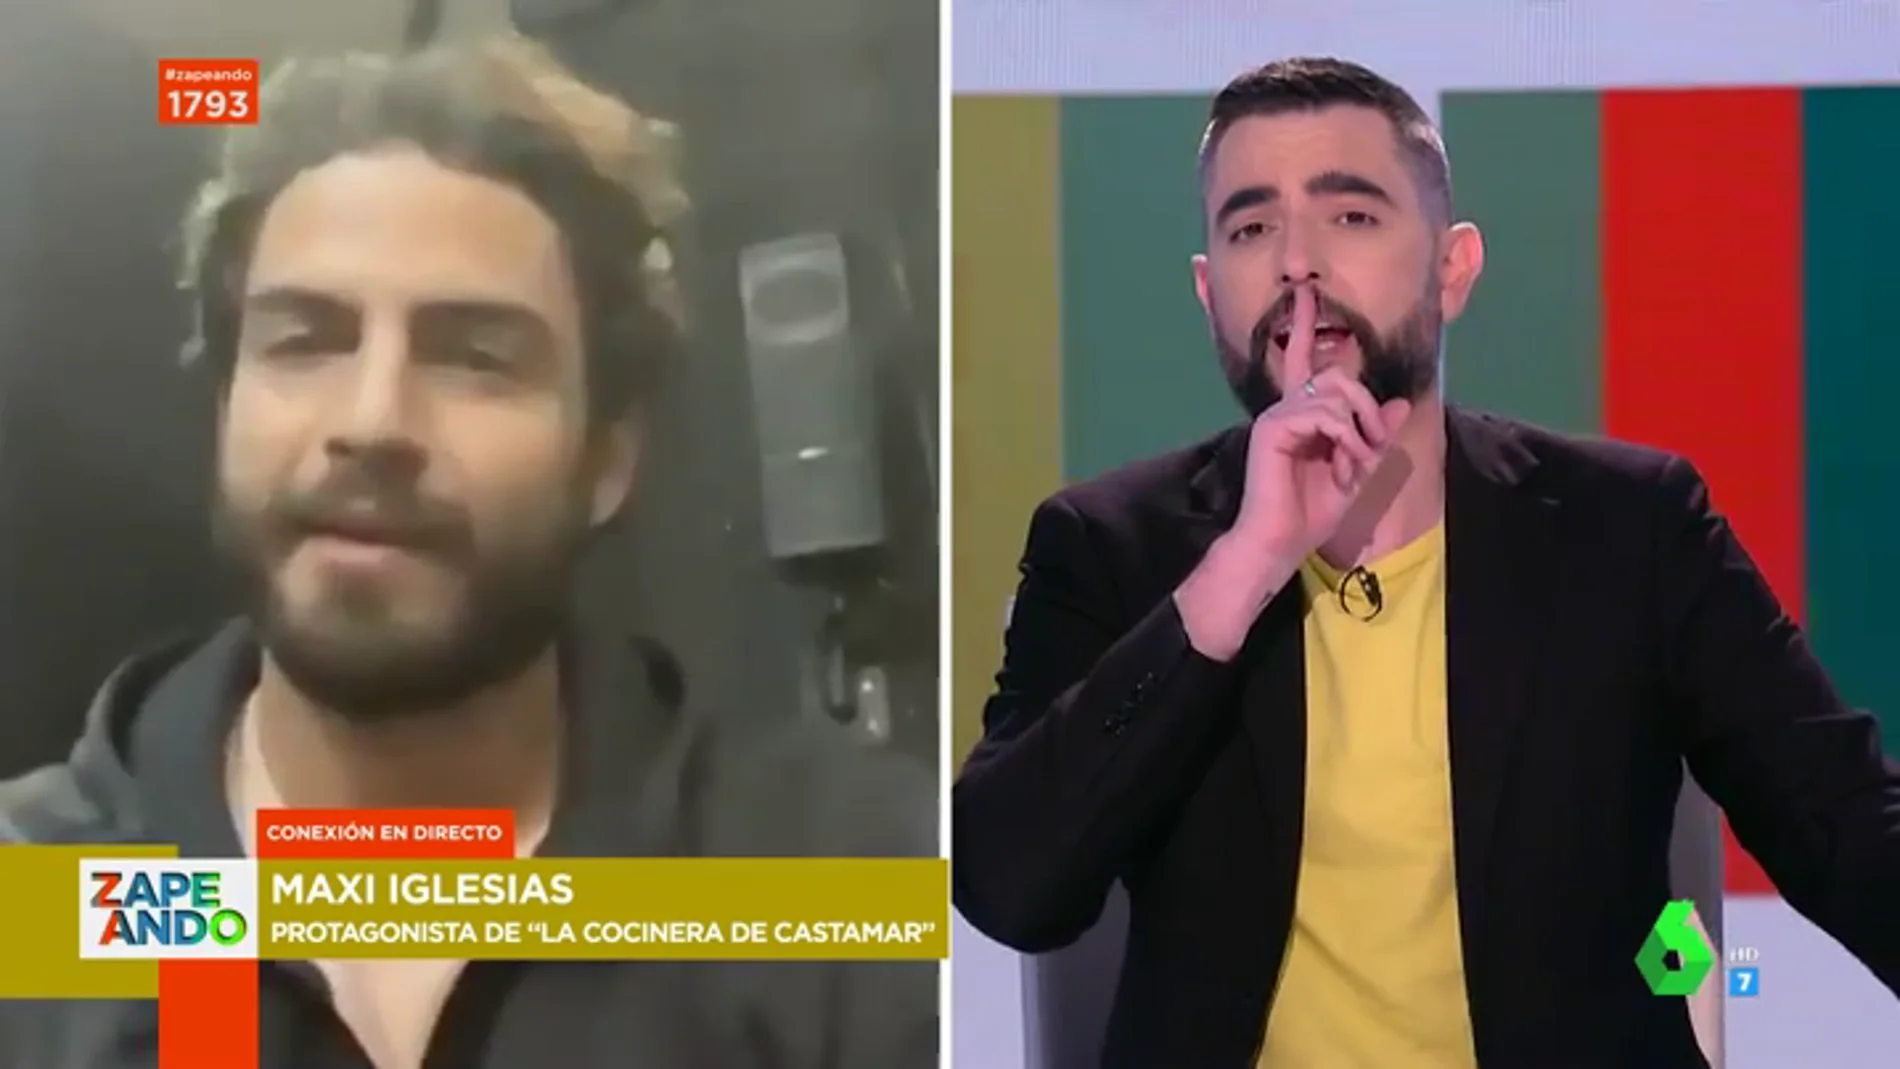 La reacción de Dani Mateo ante la inesperada broma de Maxi Iglesias sobre Zapeando: "Hasta aquí la entrevista"